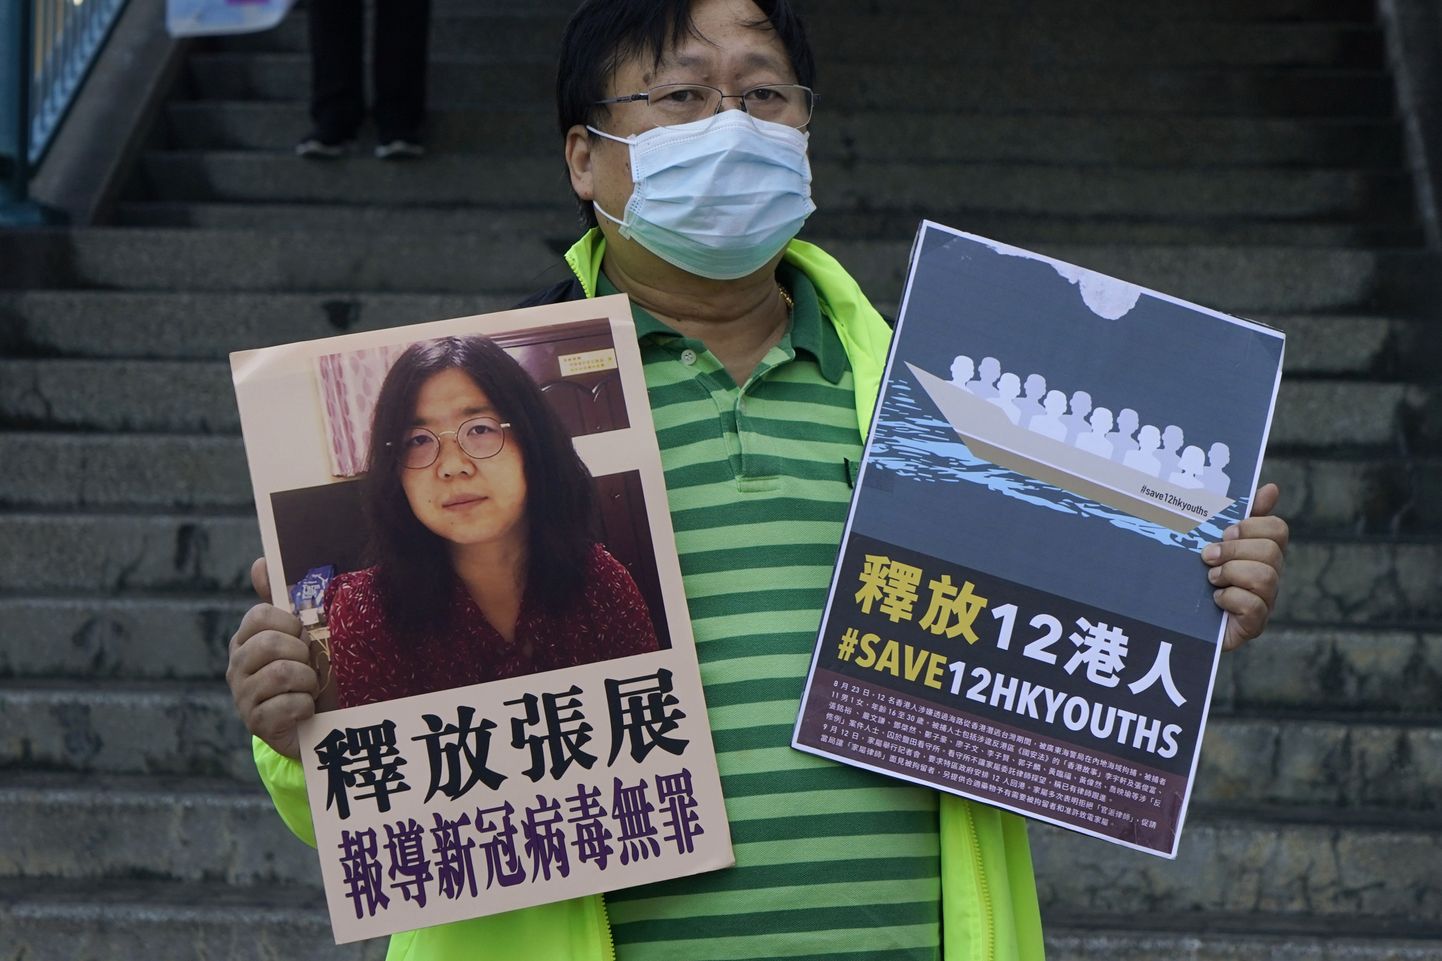 Protestija hoidmas fotot,  millel on näha advokaat Zhang Zhani, kelle kohus saatis Wuhani koroonaolukorra raporteerimise eest trellide taha